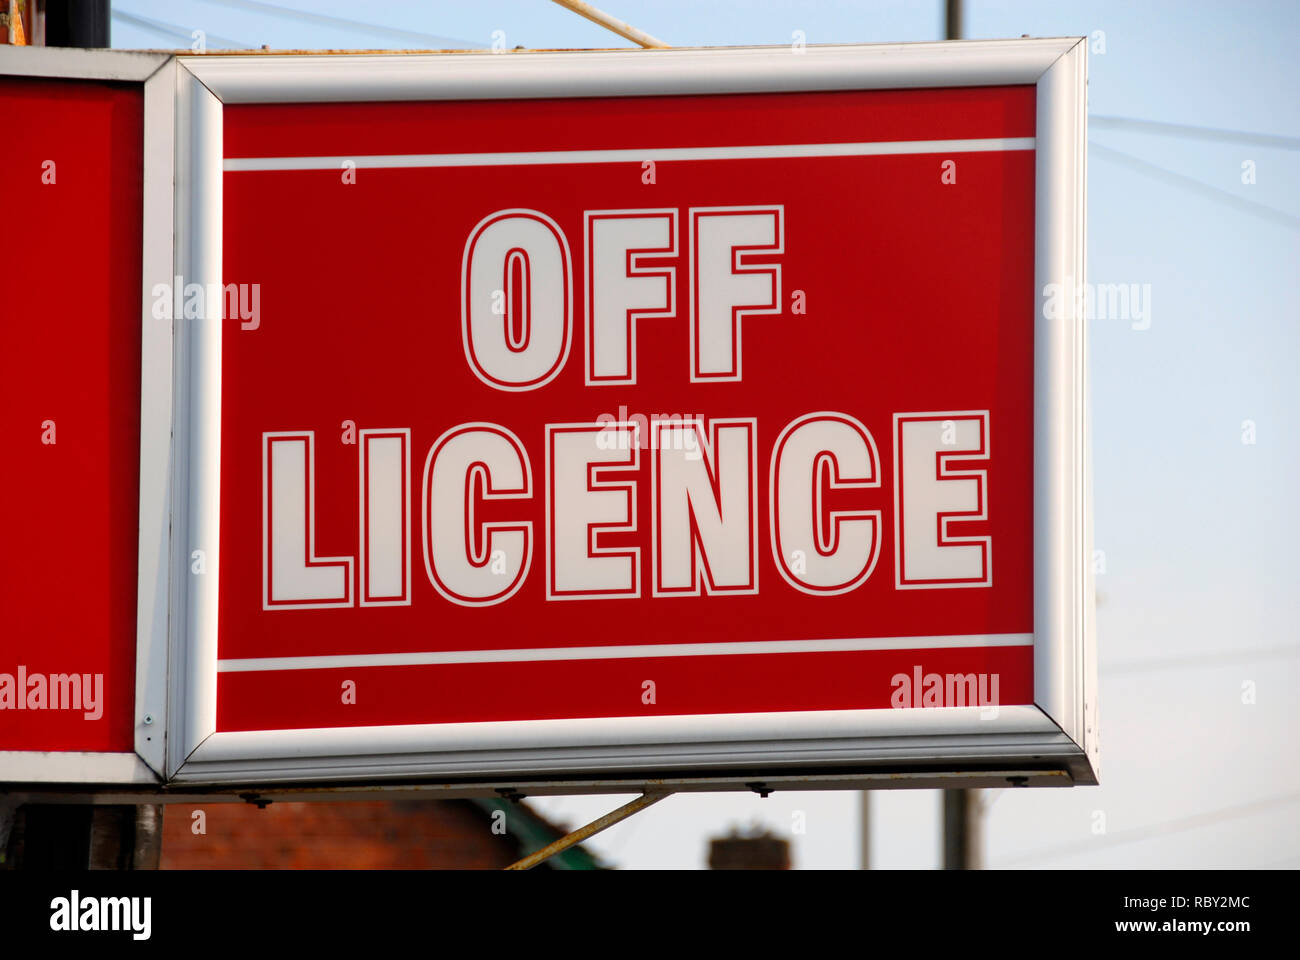 Zeichen außerhalb des Shops sagen 'Lizenz' aus. Stockfoto